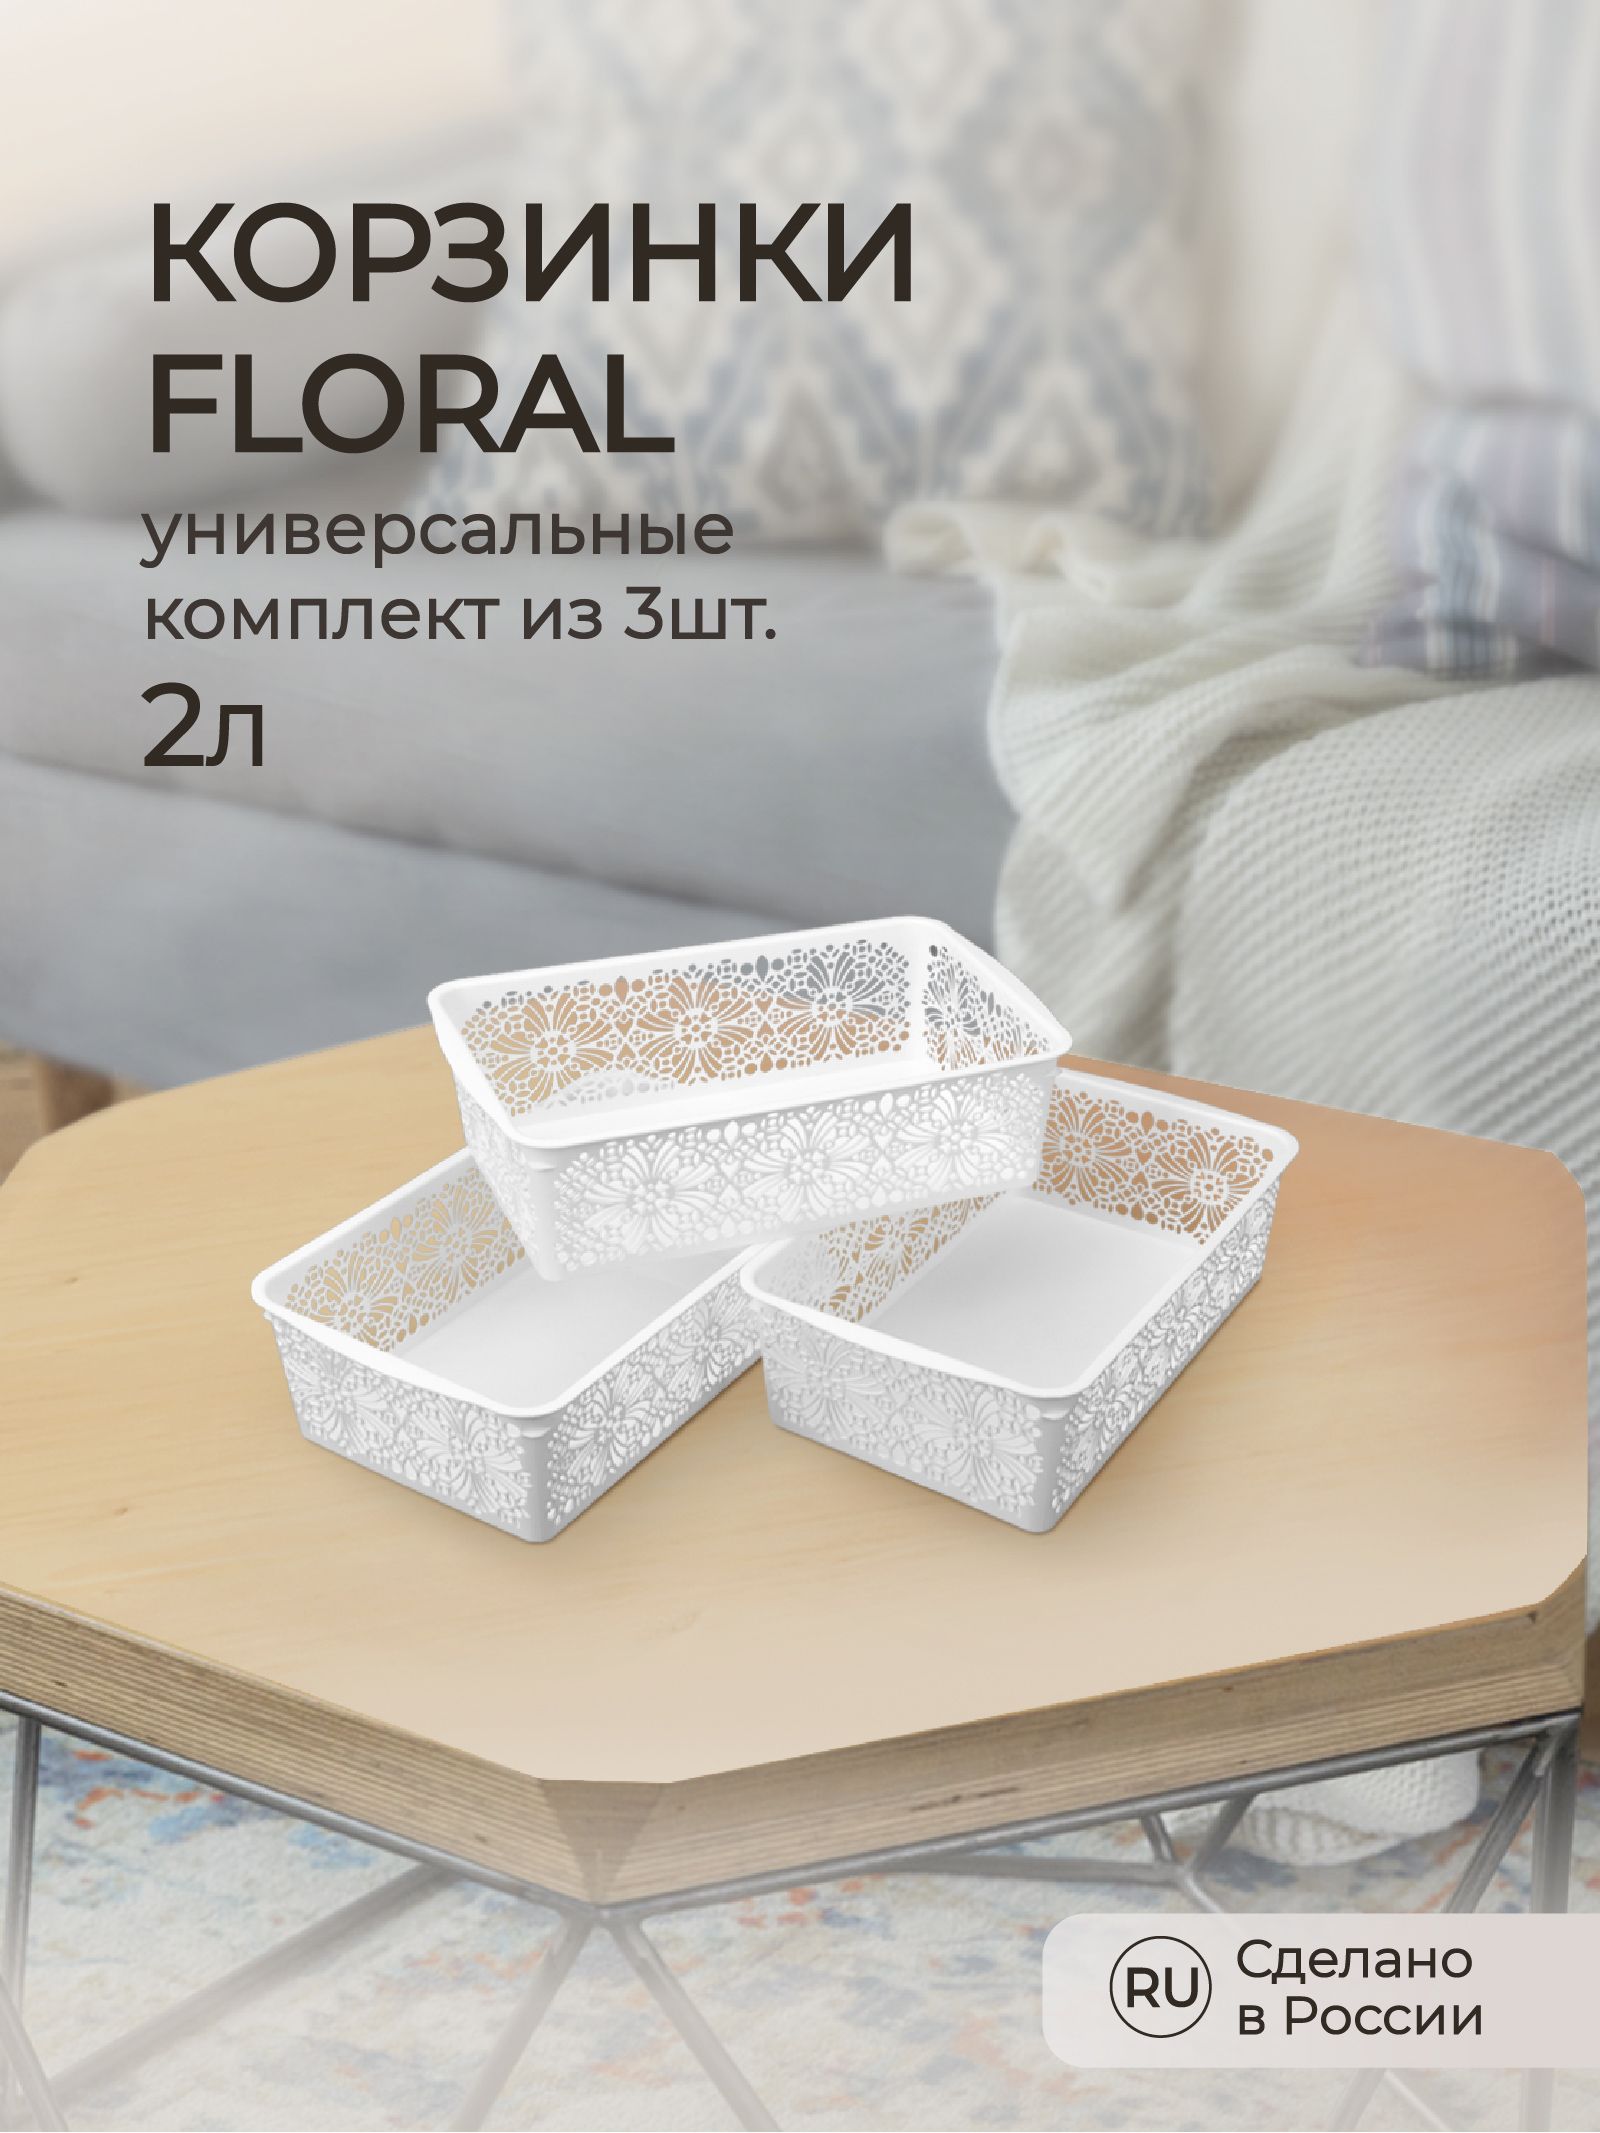 Комплект корзинок Econova универсальных floral 2л 3шт. - фото 1